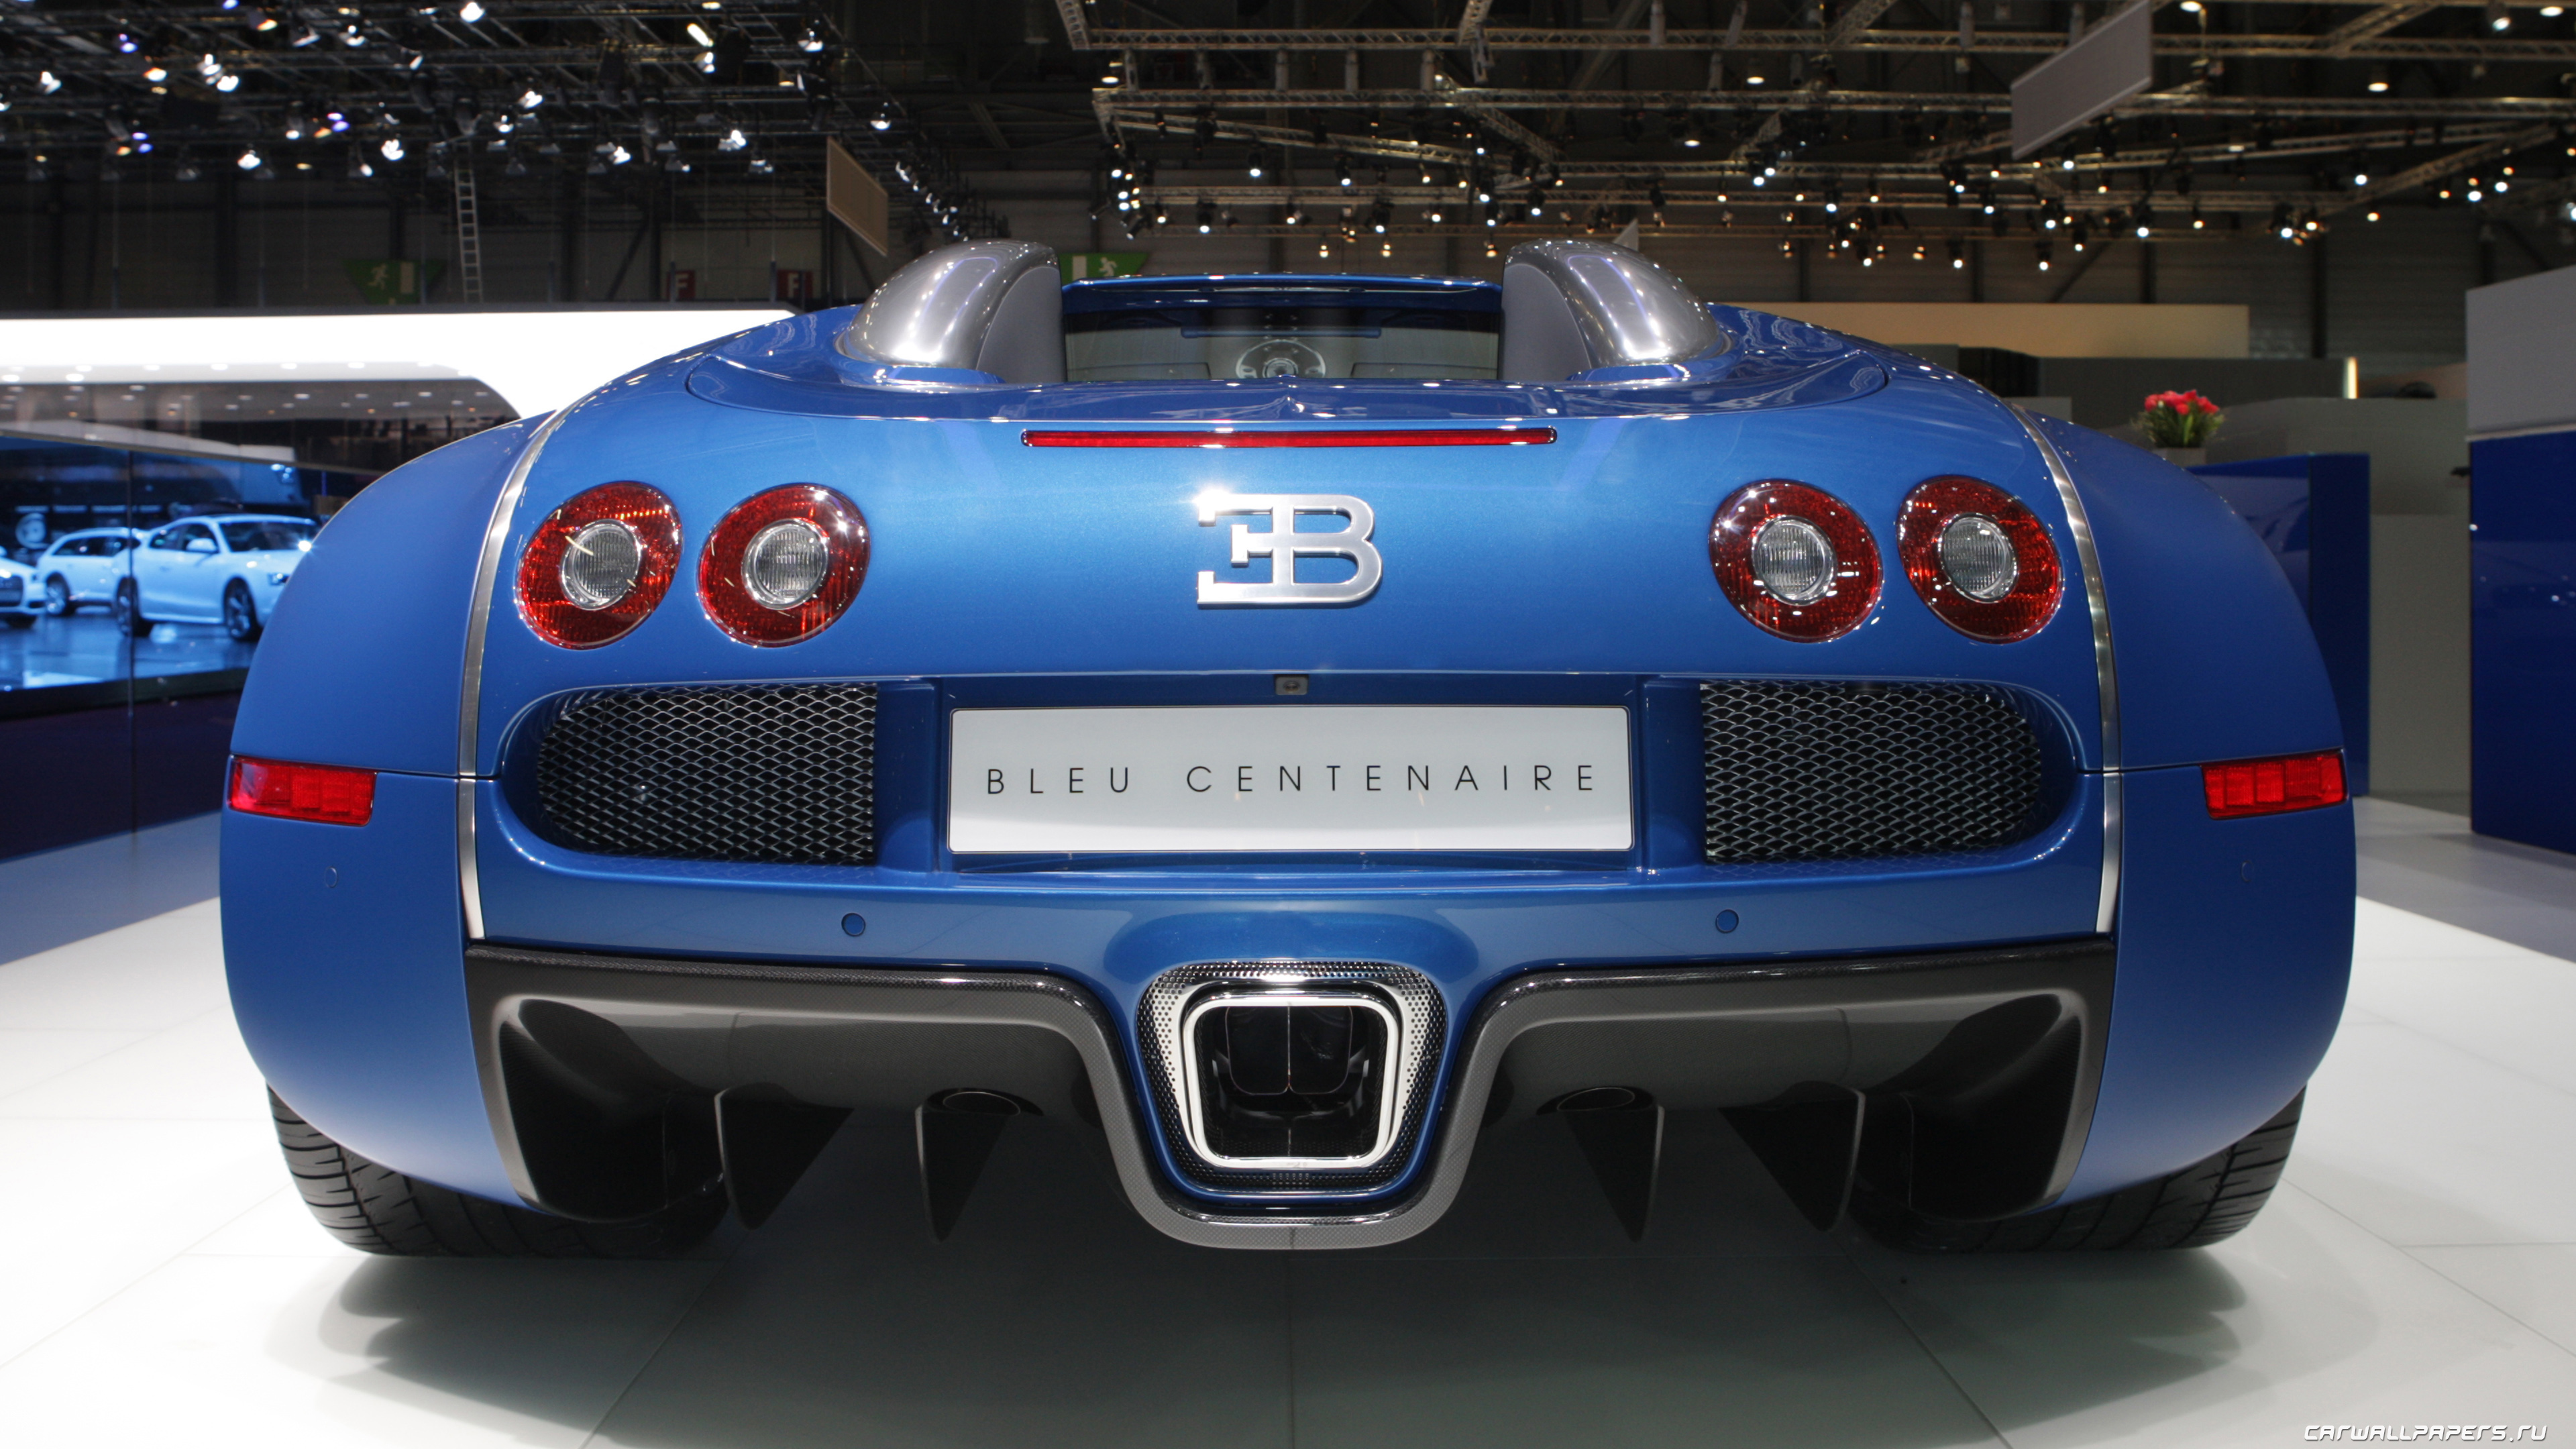 Bugatti manufacturer